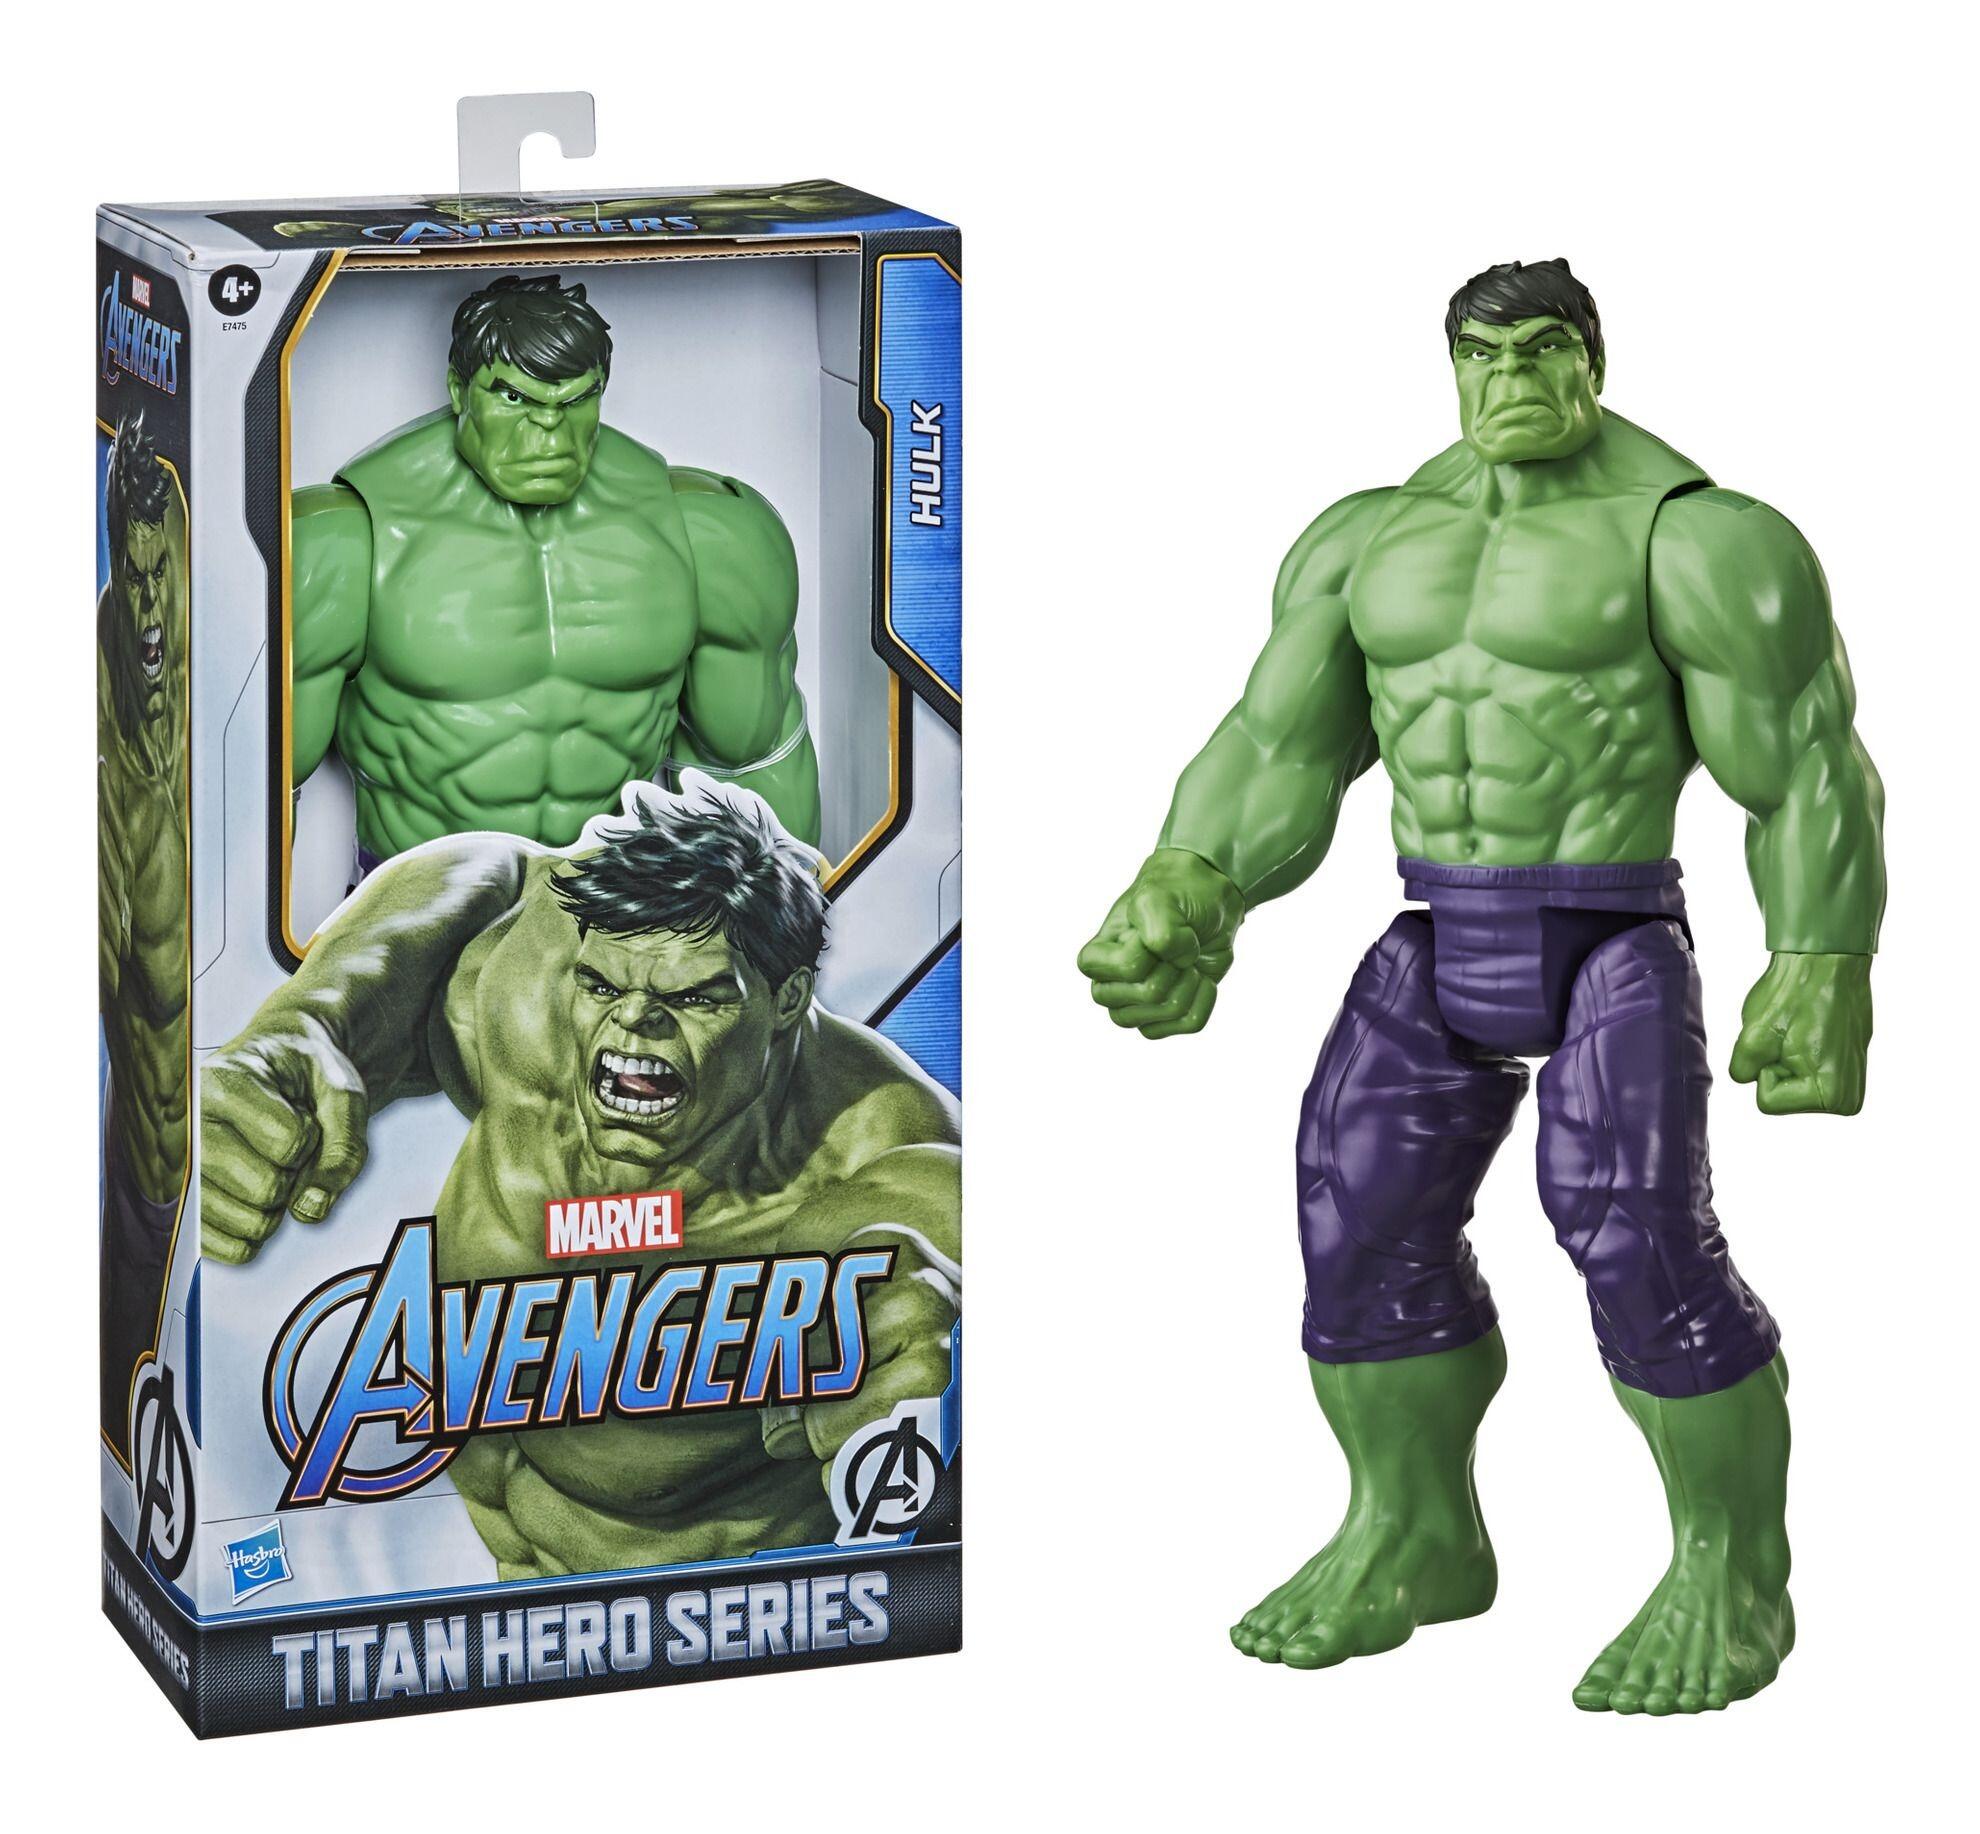 Marvel Avengers Titan Hero Deluxe Hulk